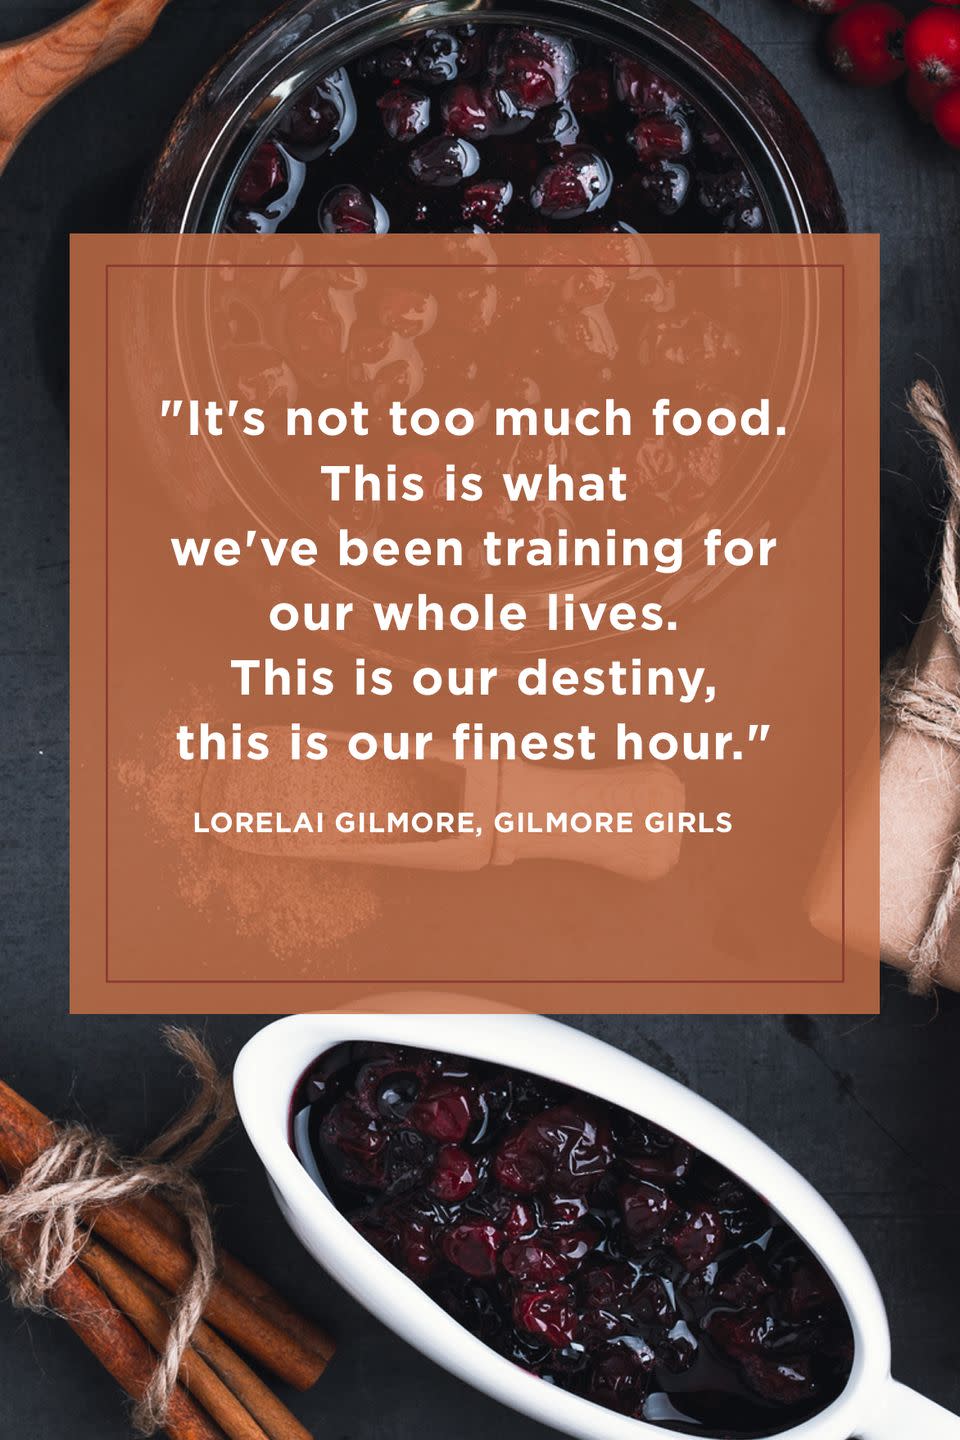 16) Lorelai Gilmore, Gilmore Girls